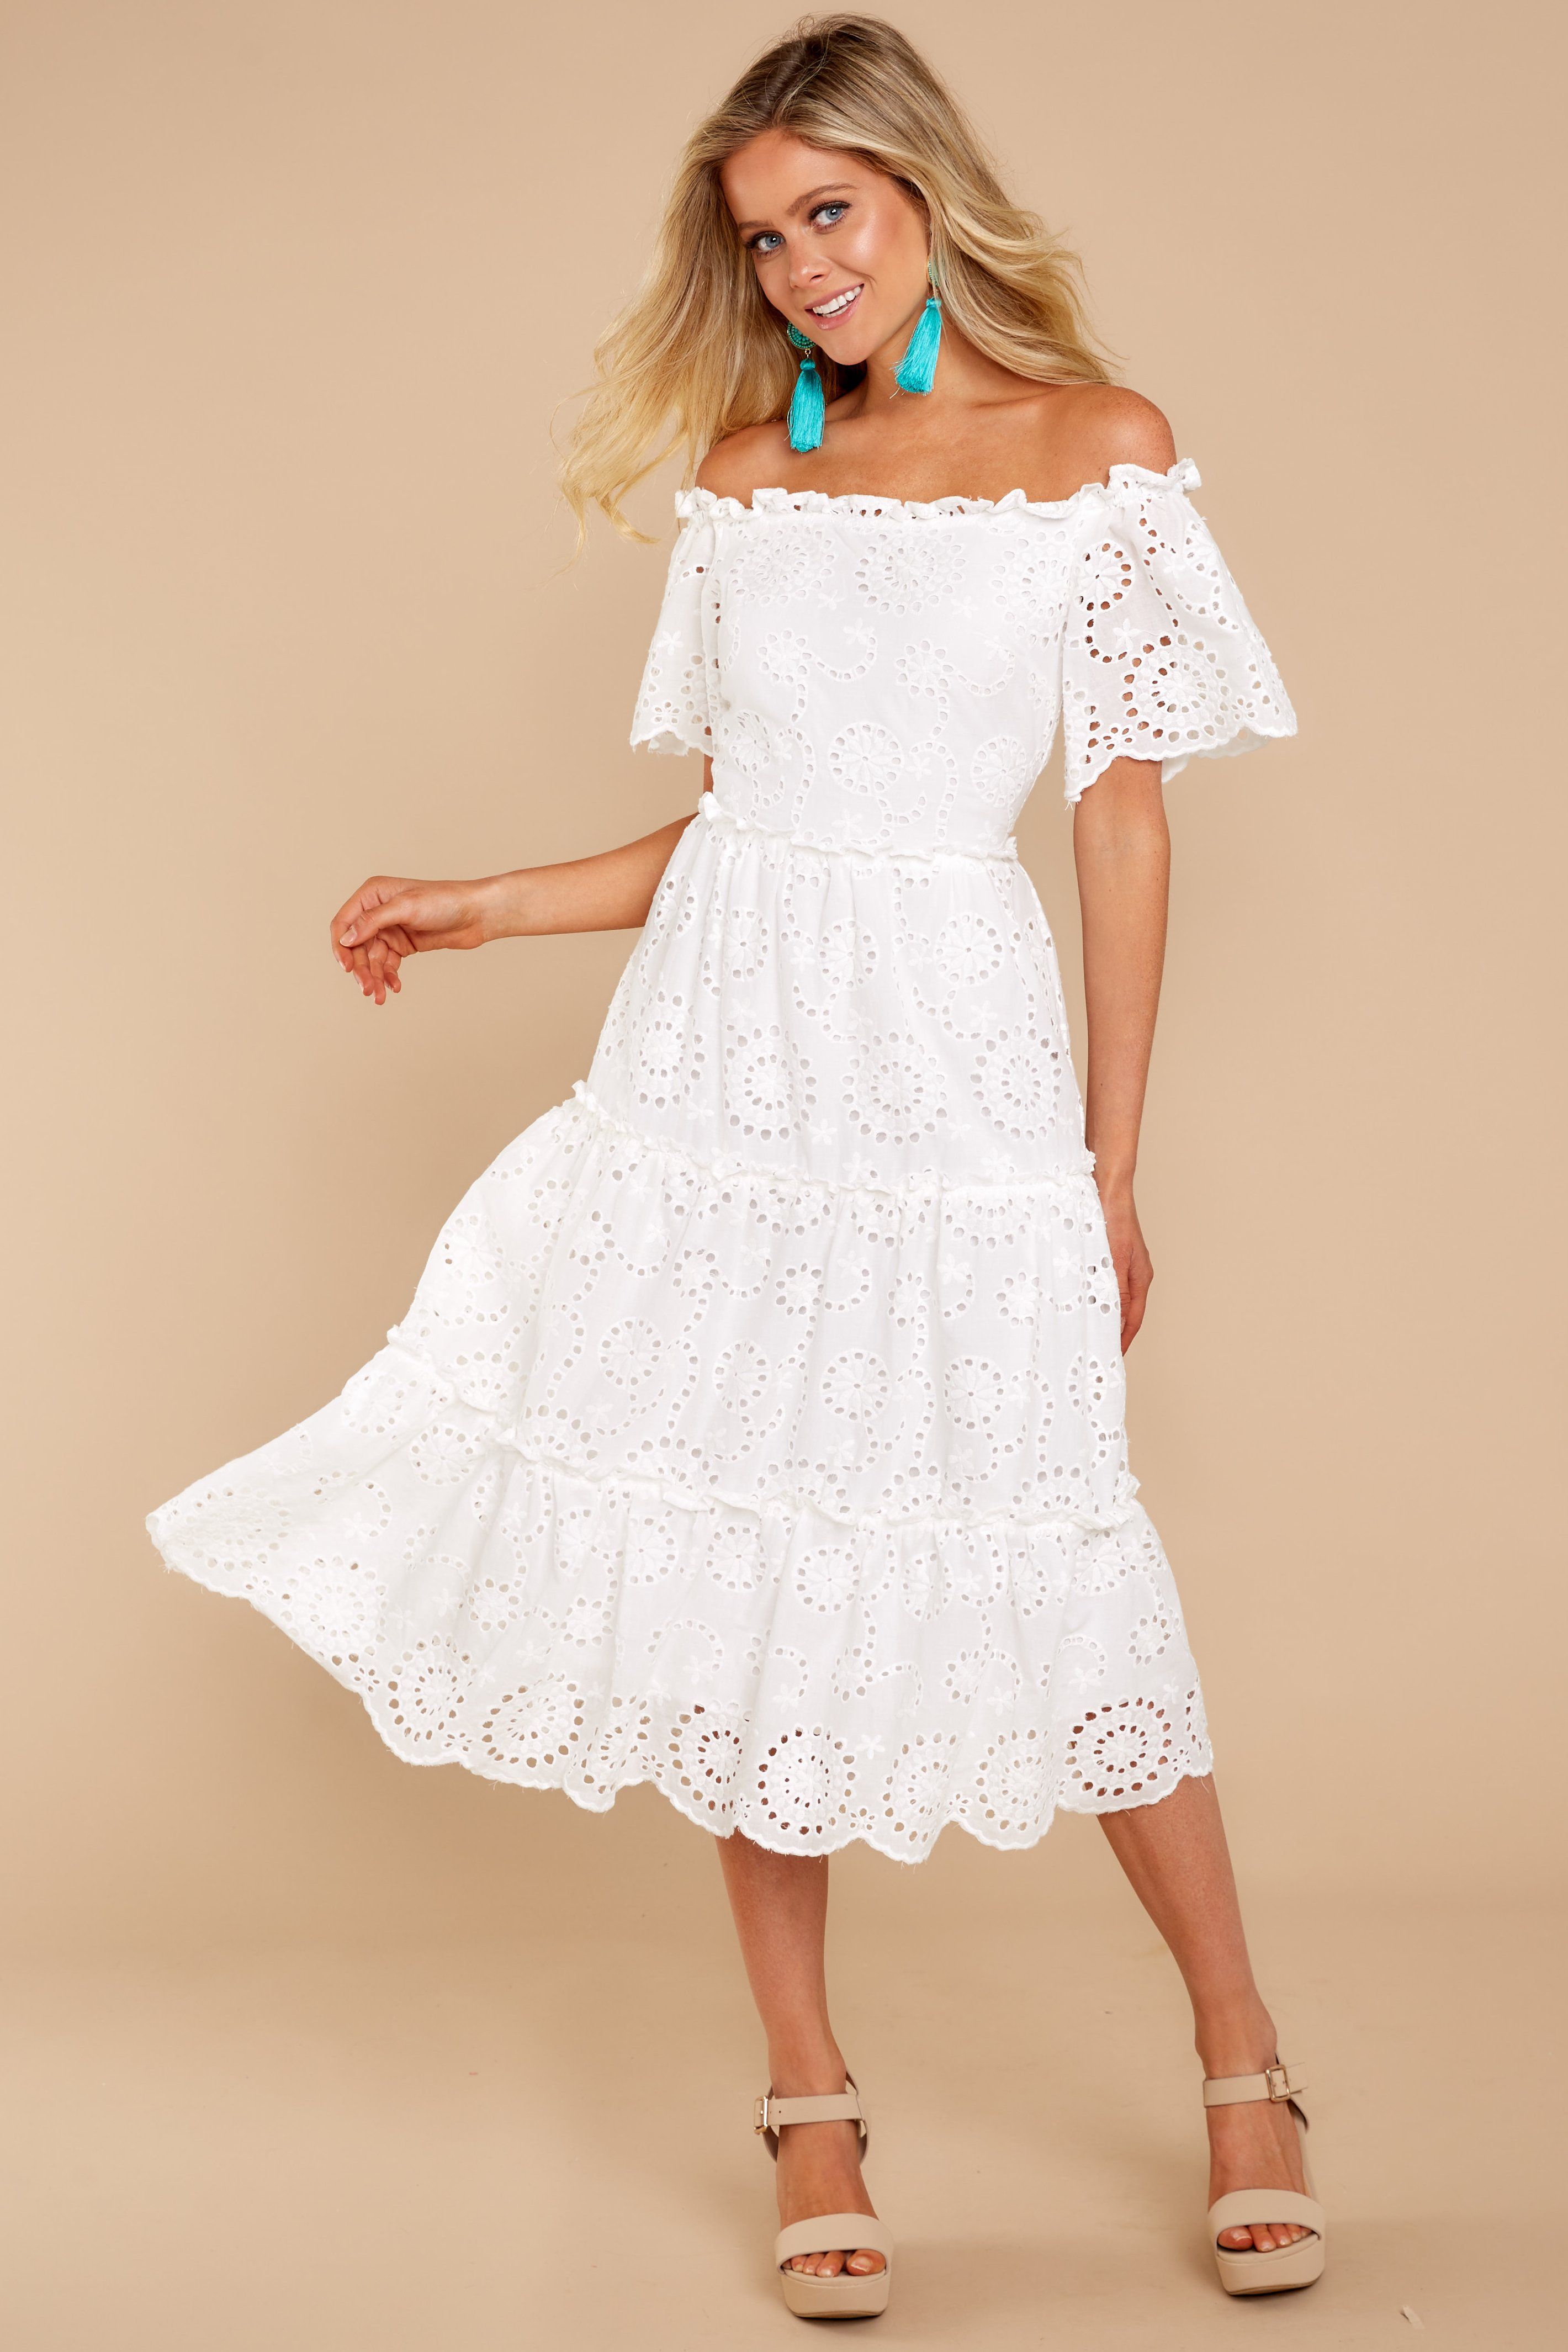 Cute white birthday dress